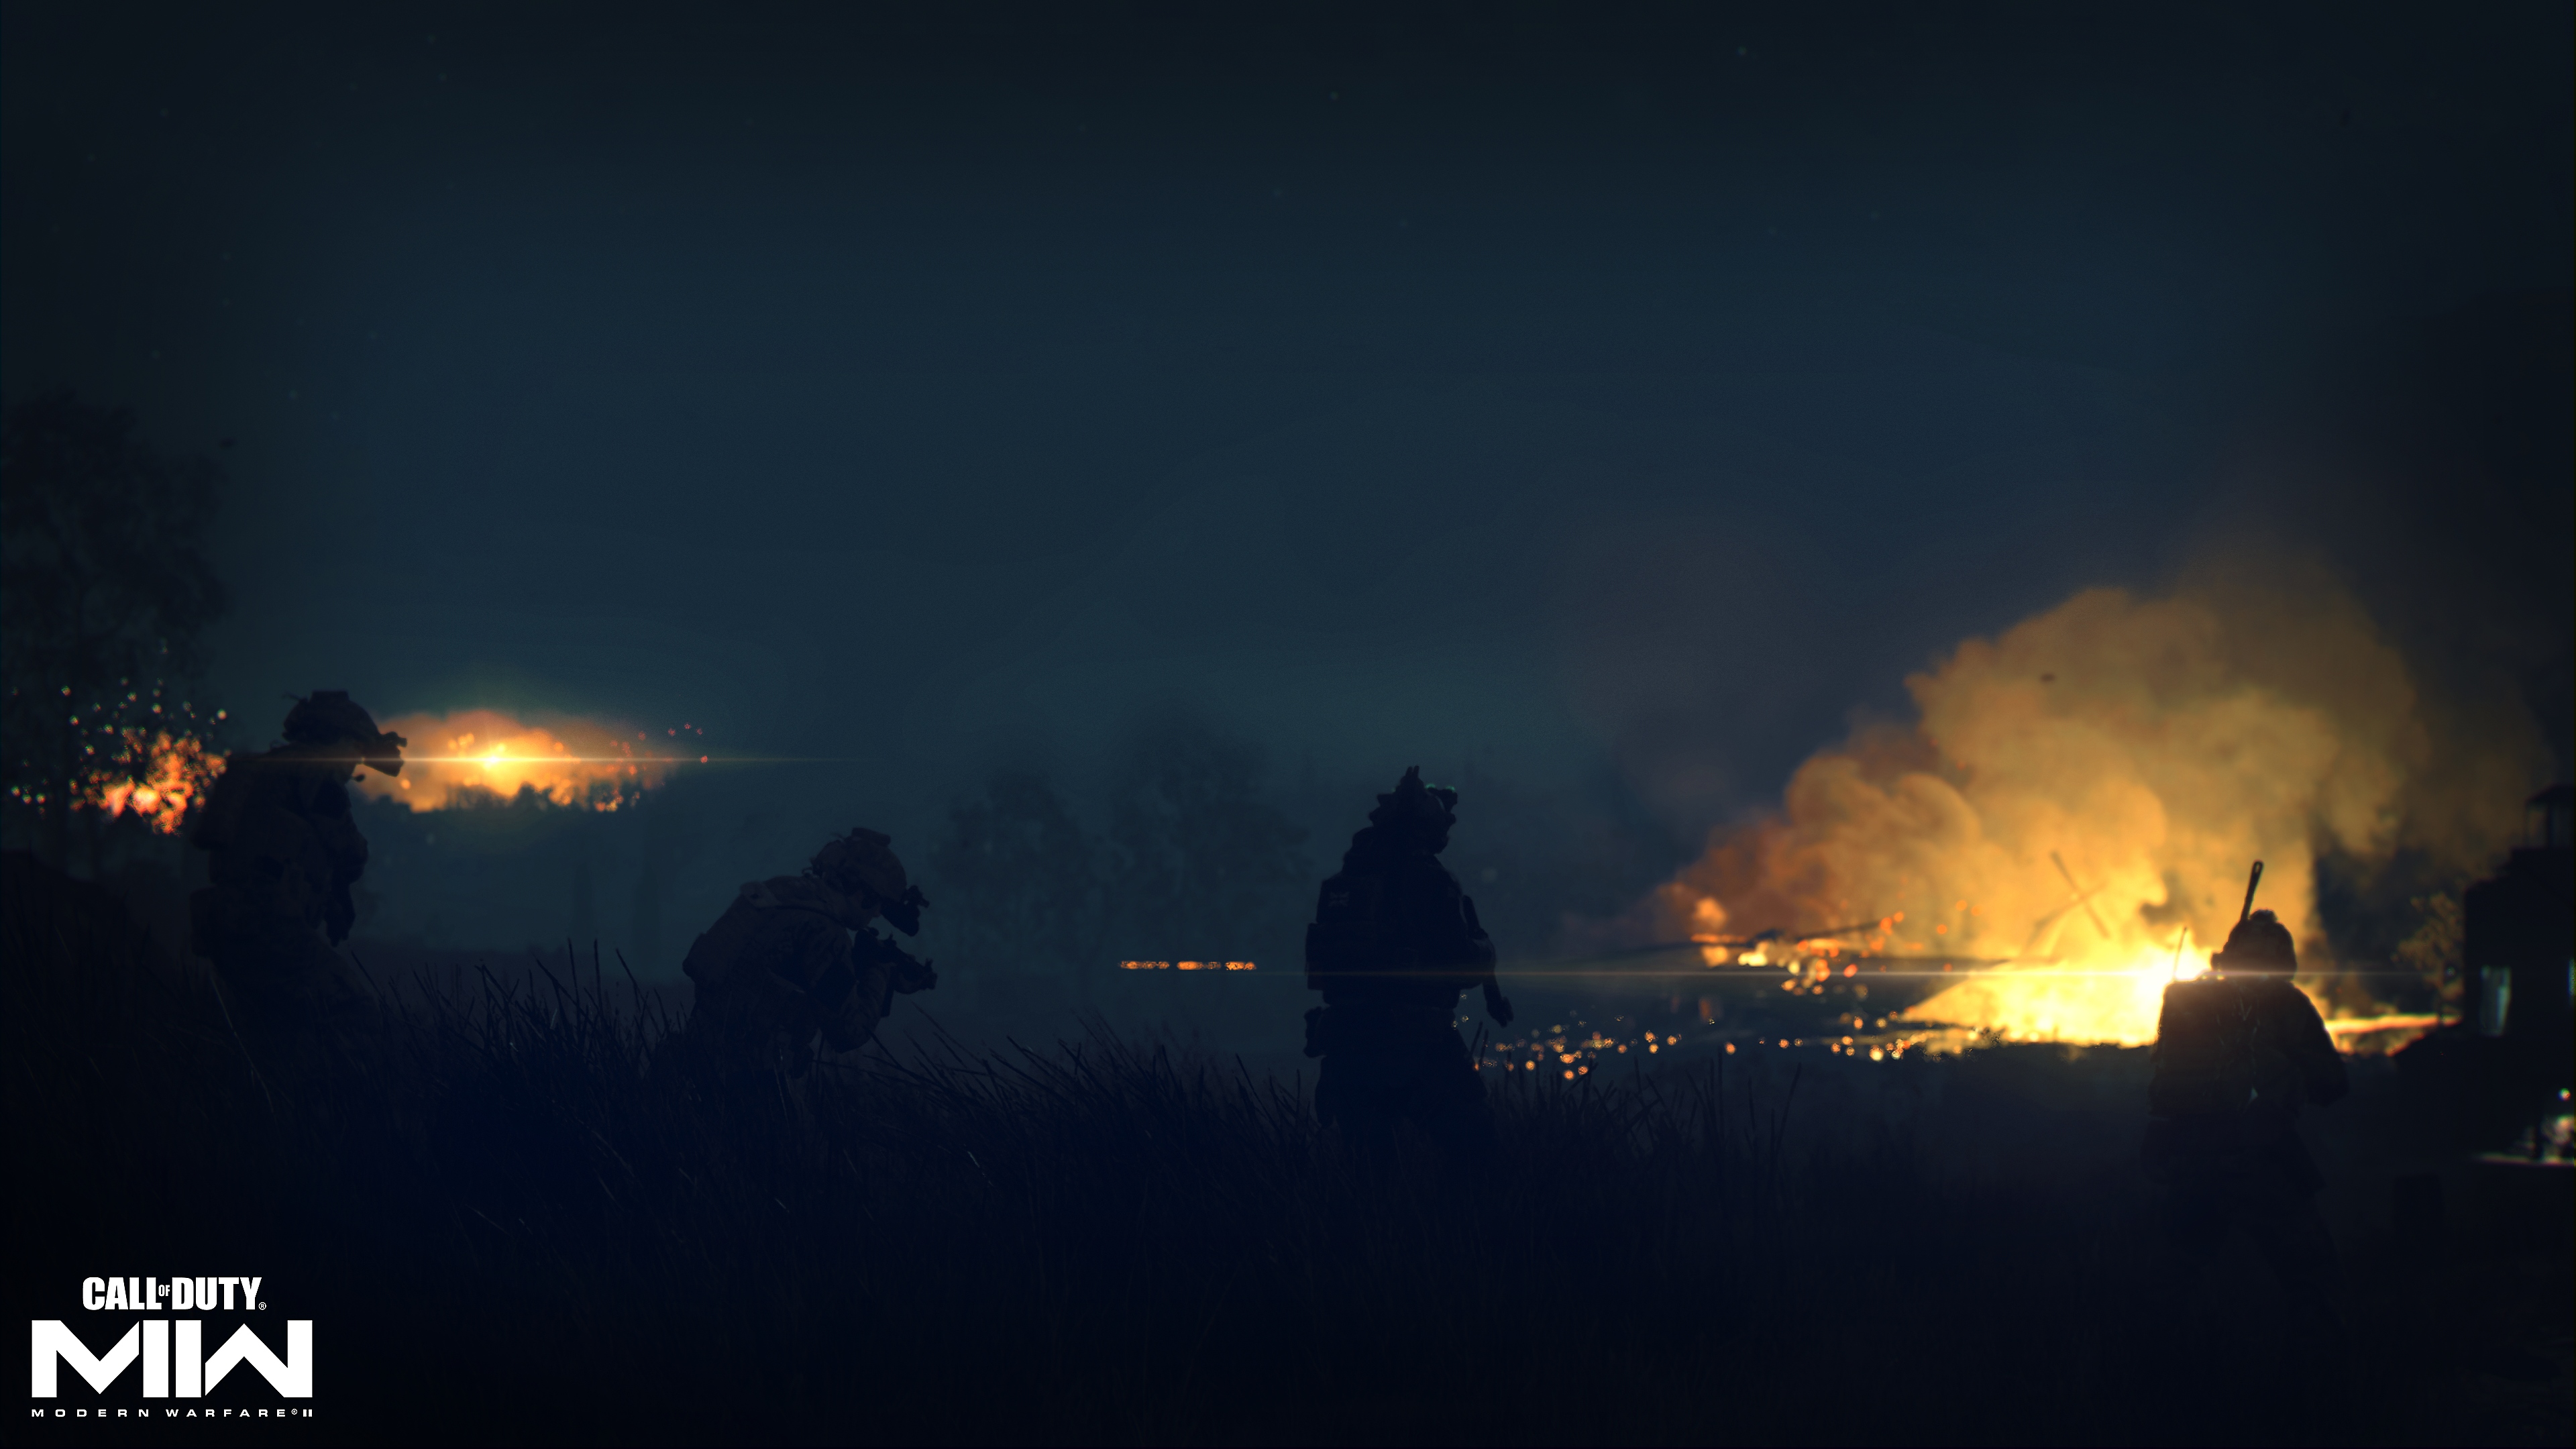 Call of Duty: Modern Warfare 2 2022 - Capture d'écran montrant un incendie au loin dans un paysage sombre